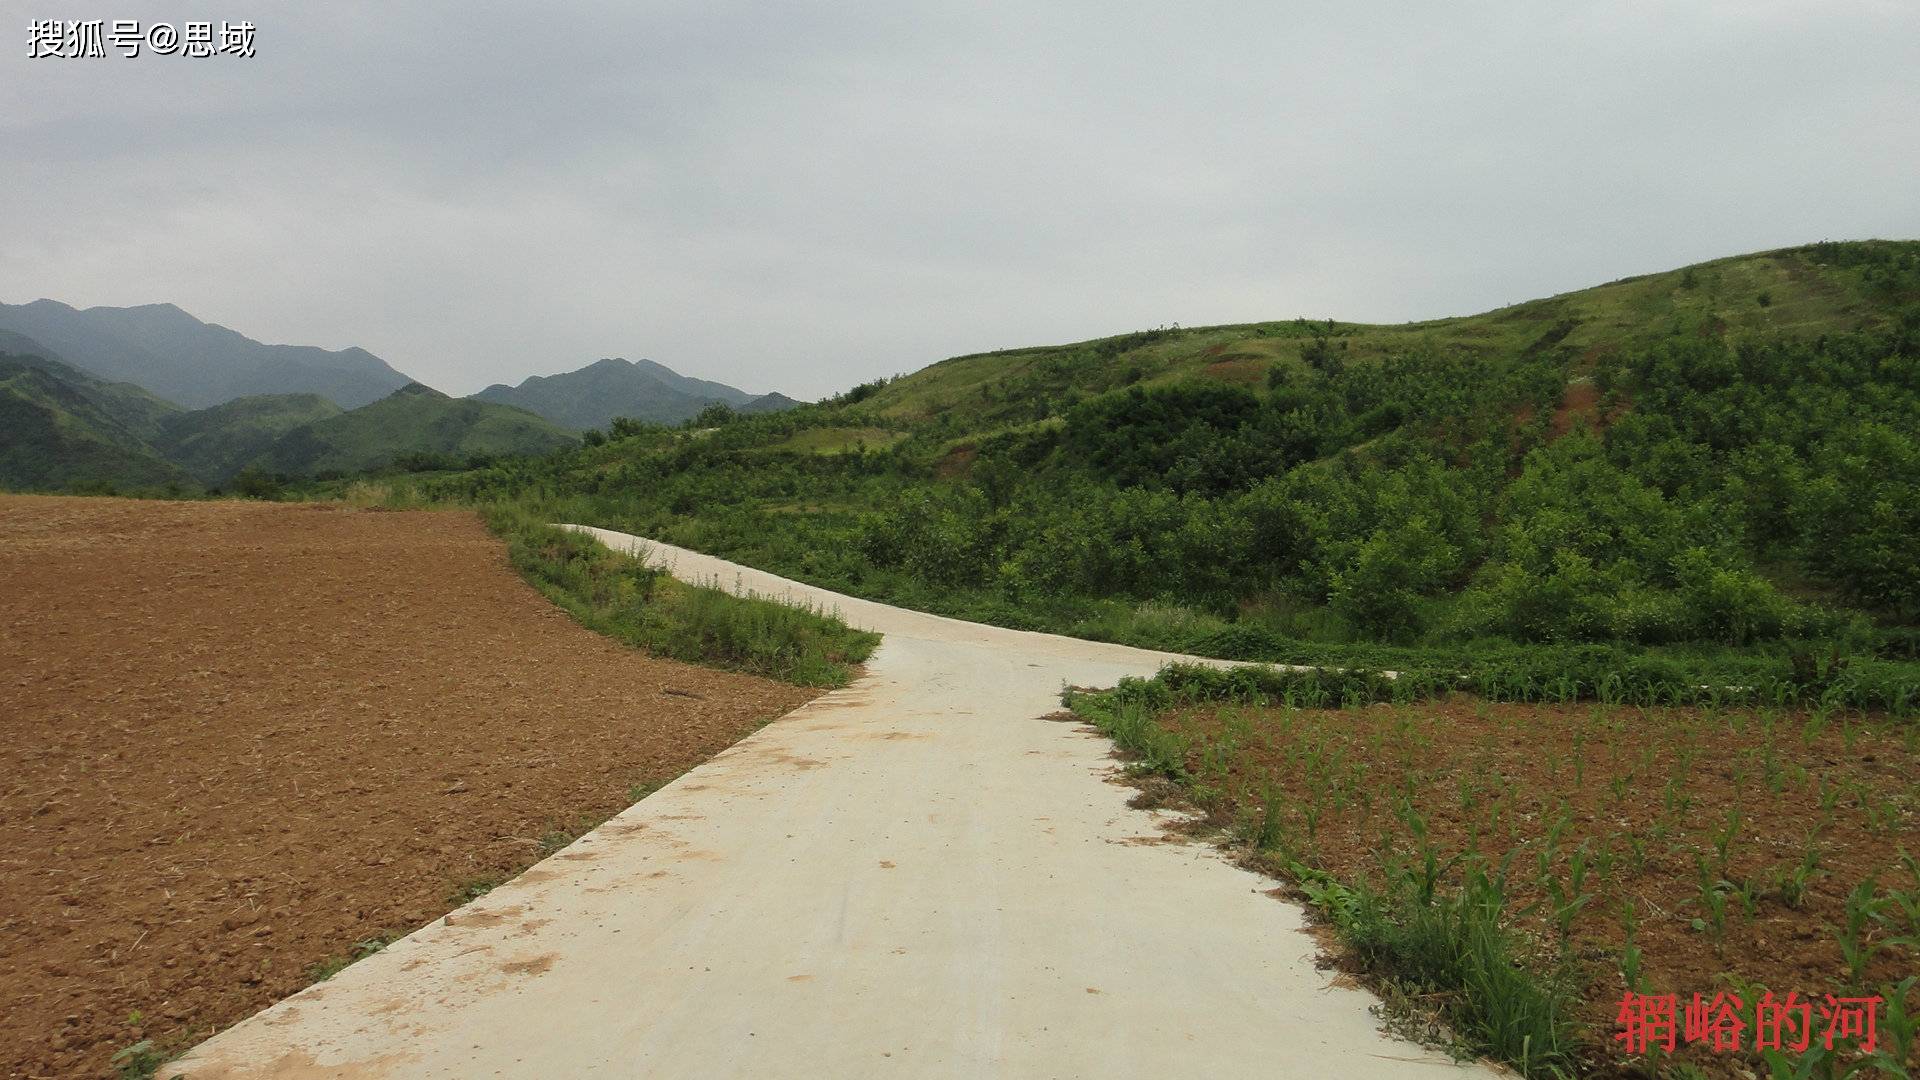 走遍蓝田，2014玉山镇（峒峪村）穿越旅行（1）。